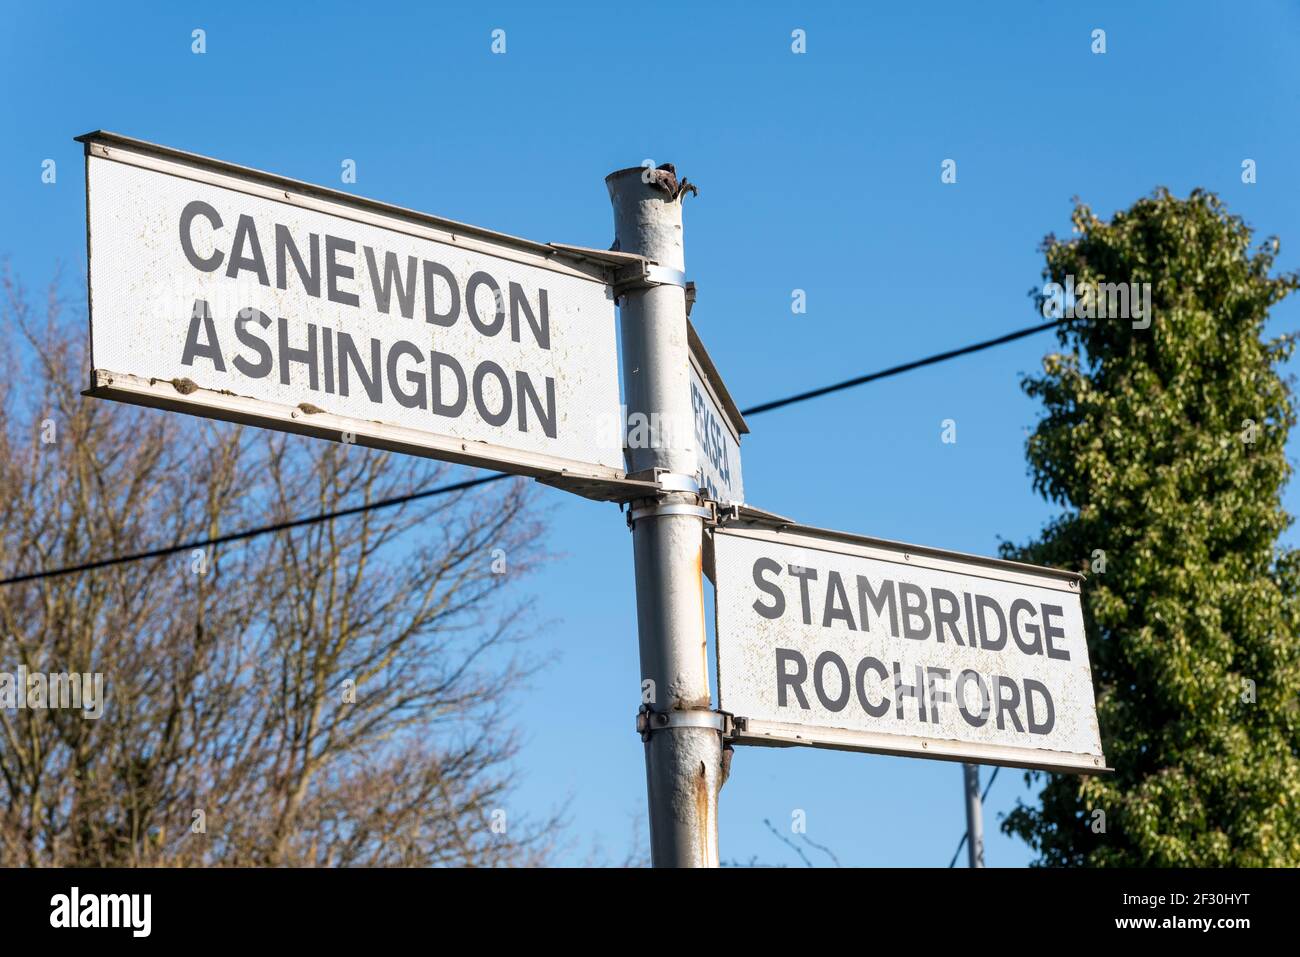 Zielschild in Ballards Gore, in der Nähe von Stambridge, Essex, Großbritannien, zeigt auf Canewdon, Ashingdon, Stambridge und Rochford. Reiseziele in den Ländern Stockfoto